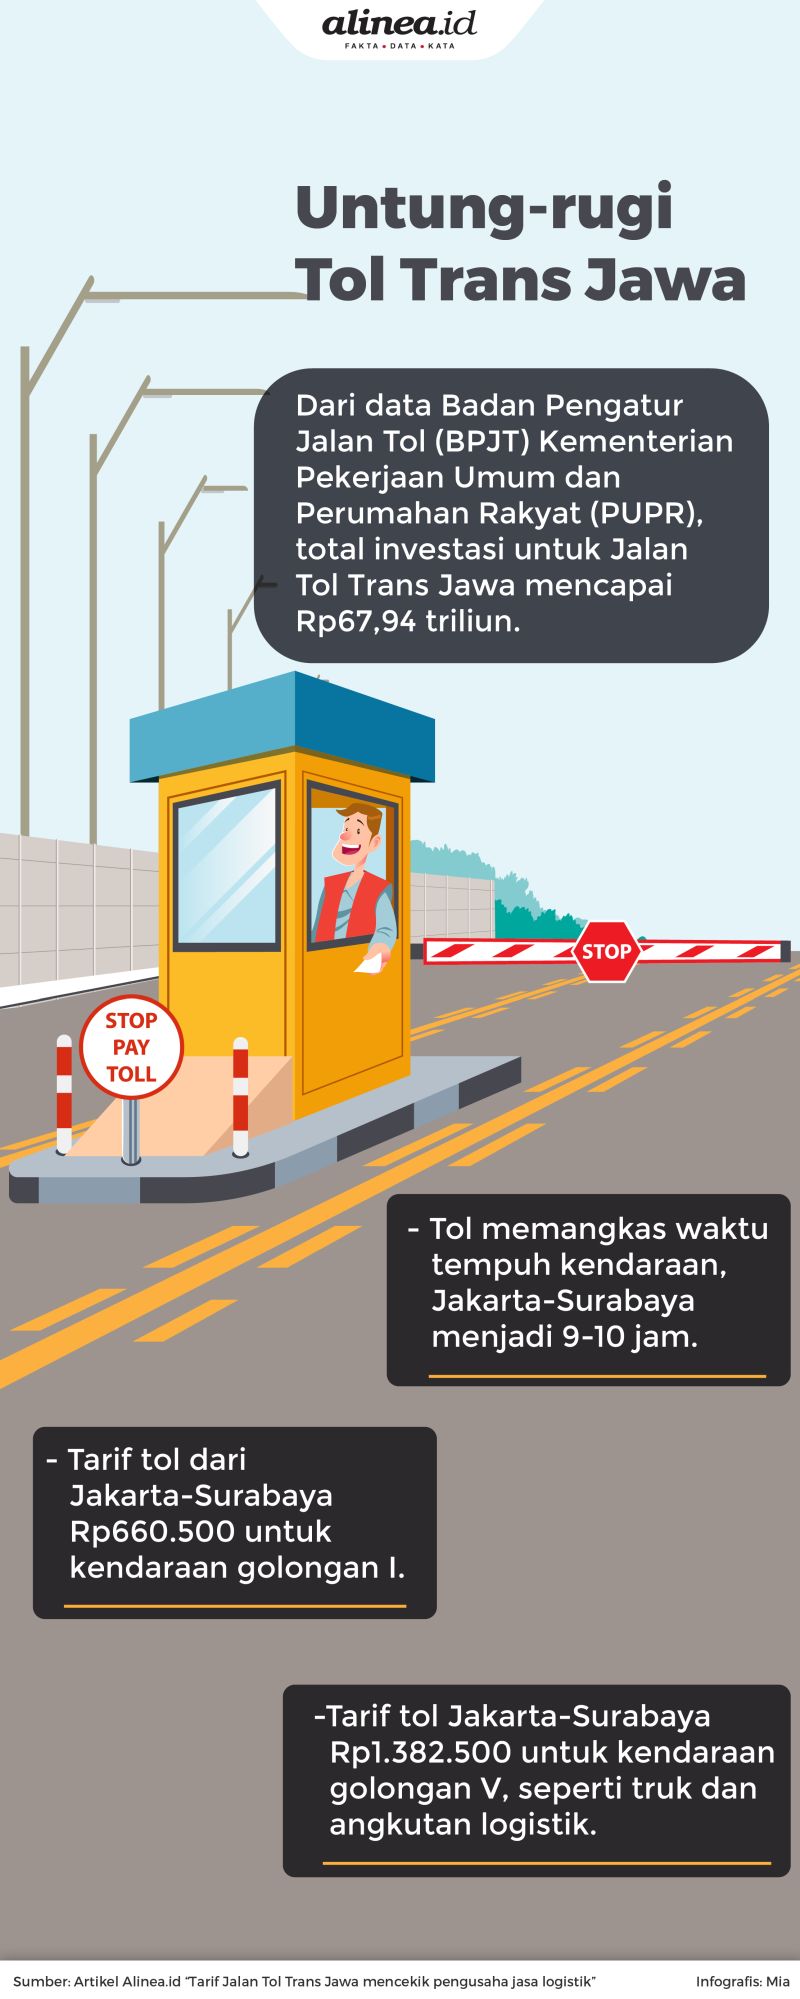 Tarif Tol Trans Jawa untuk kendaraan seperti truk terlampau mahal, dan berpengaruh terhadap pengiriman logistik.